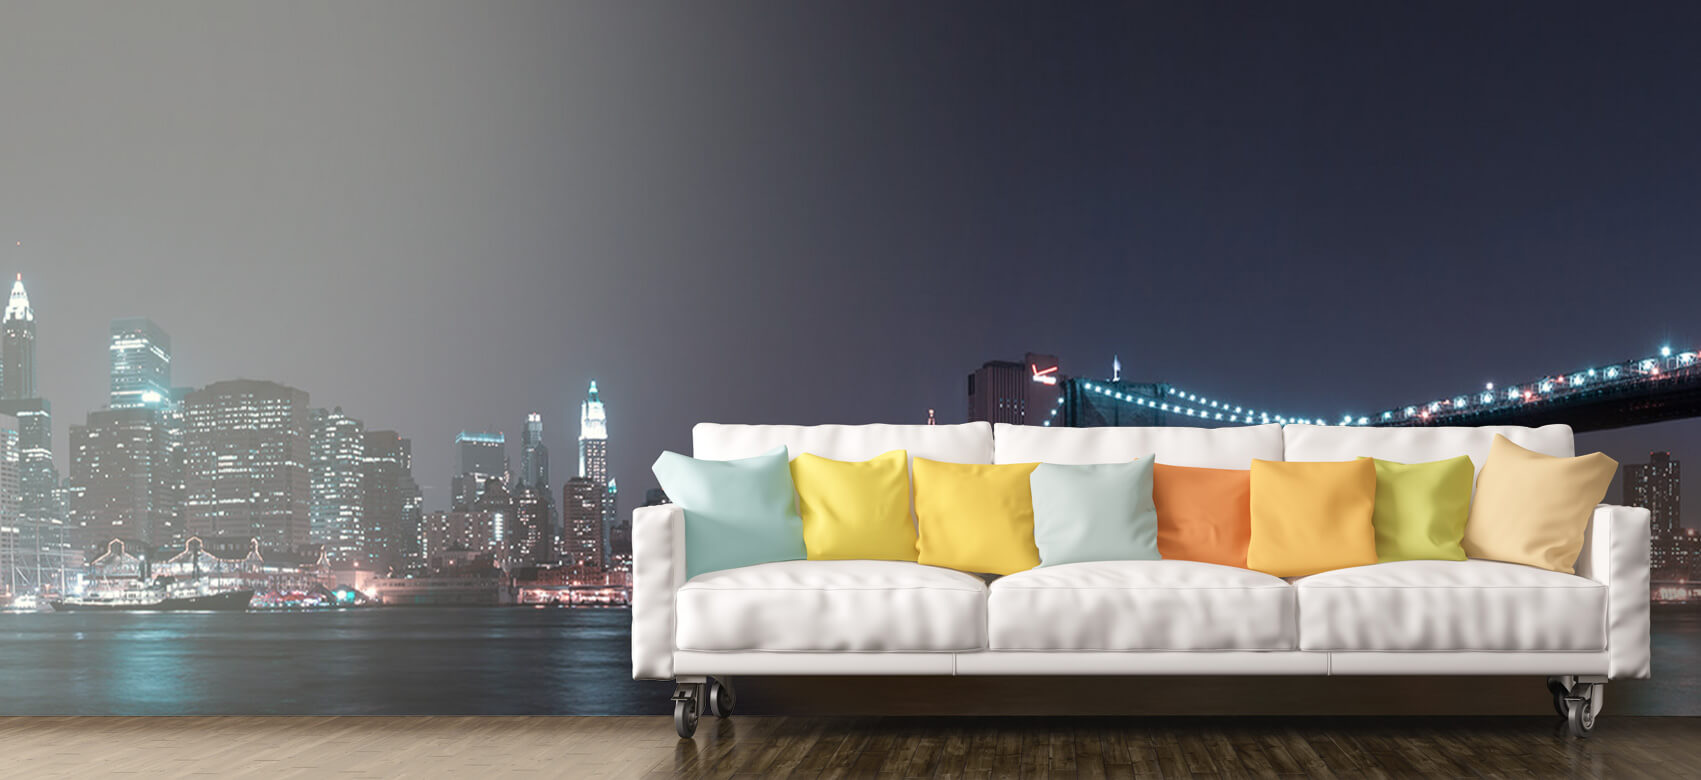 Nacht Papel pintado con El horizonte de Manhattan y el puente de Brooklyn - Habitación de adolescentes 10